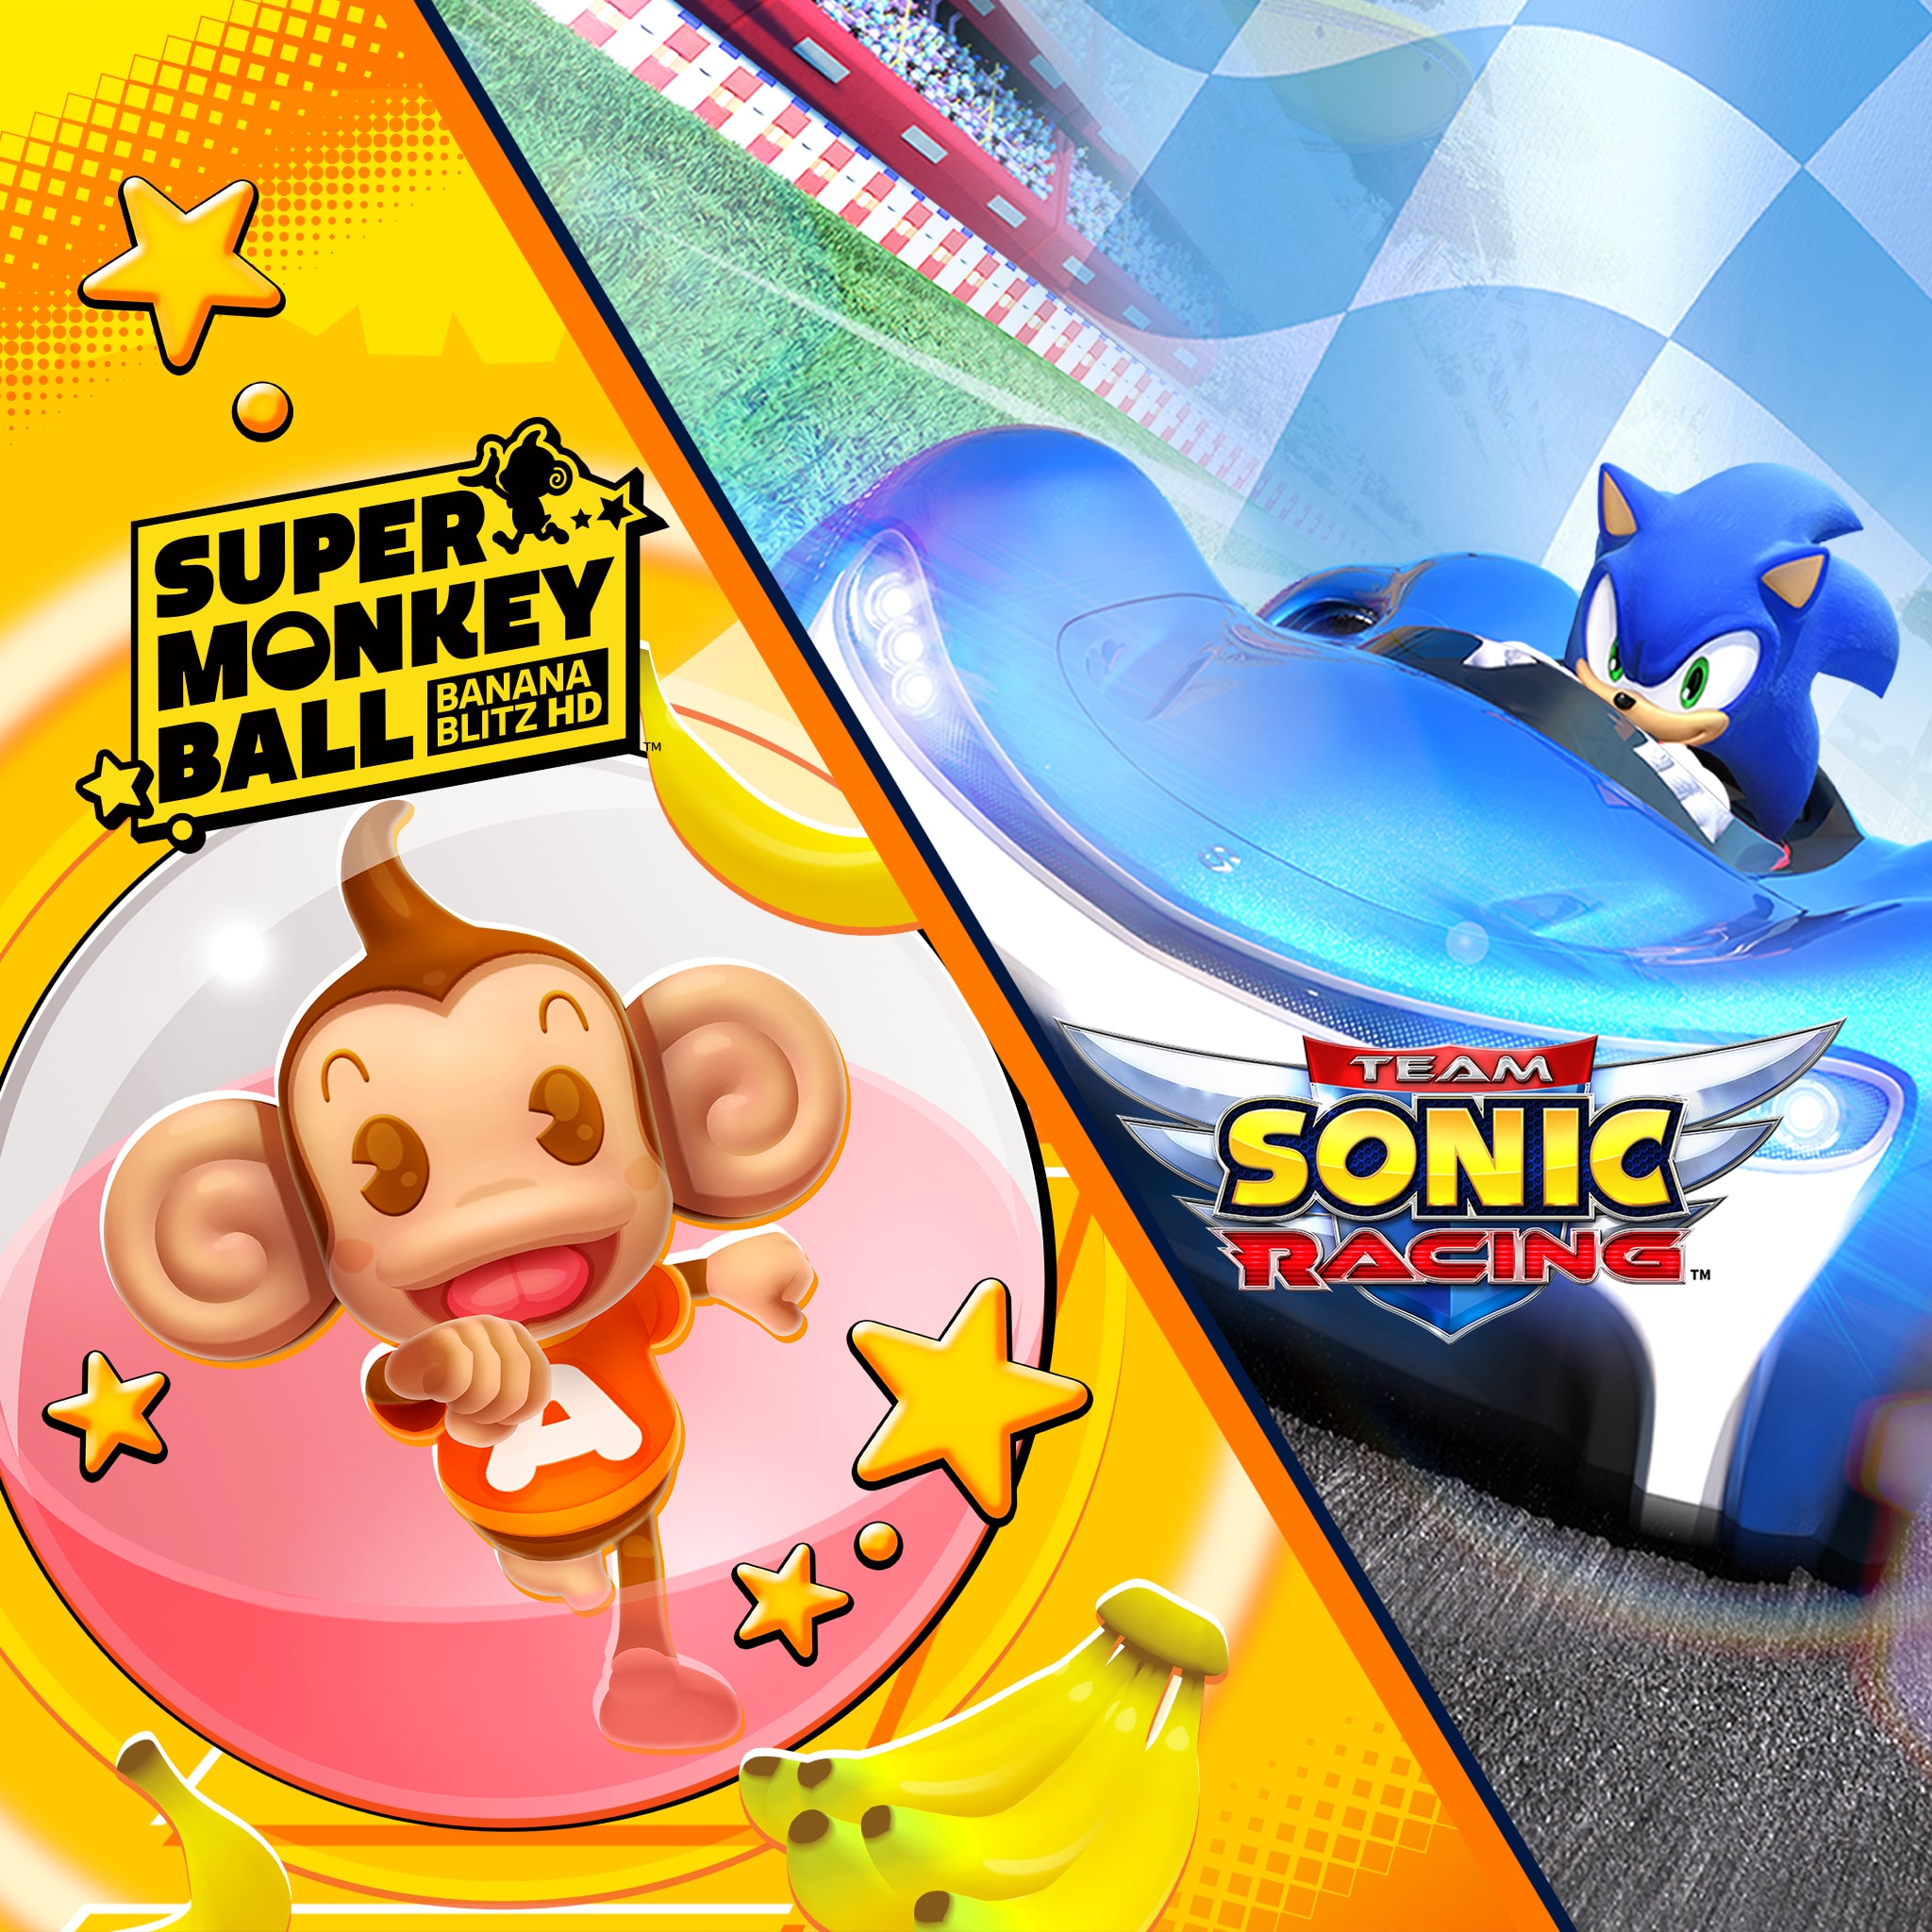 Team Sonic Racing og Super Monkey Ball: Banana Blitz HD